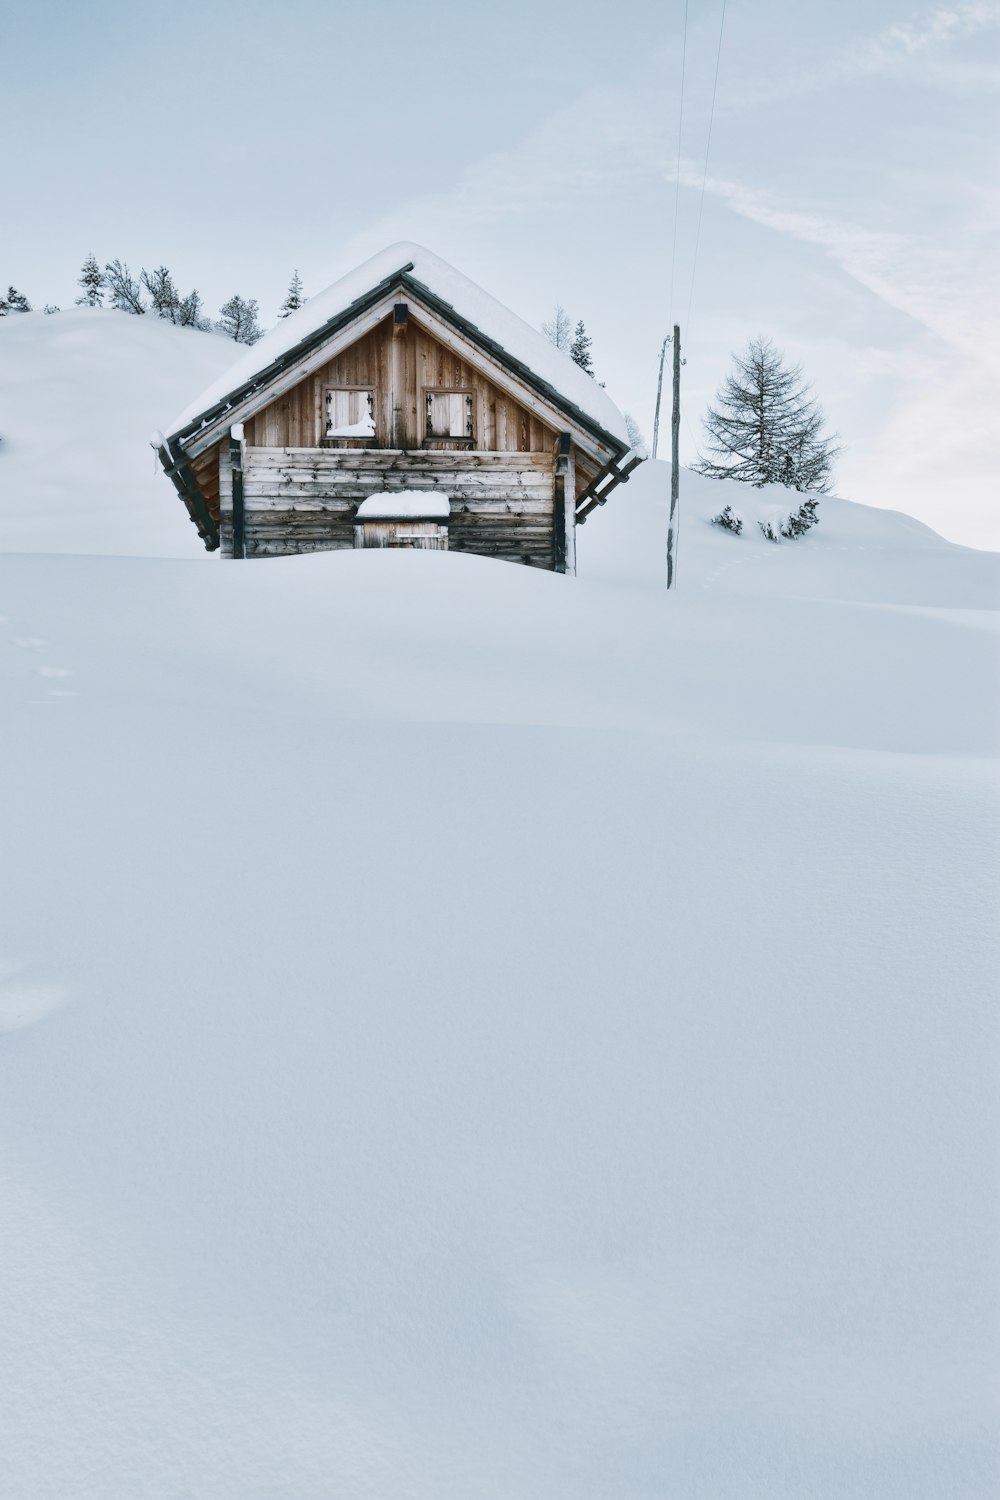 cabine de madeira marrom coberta com neve